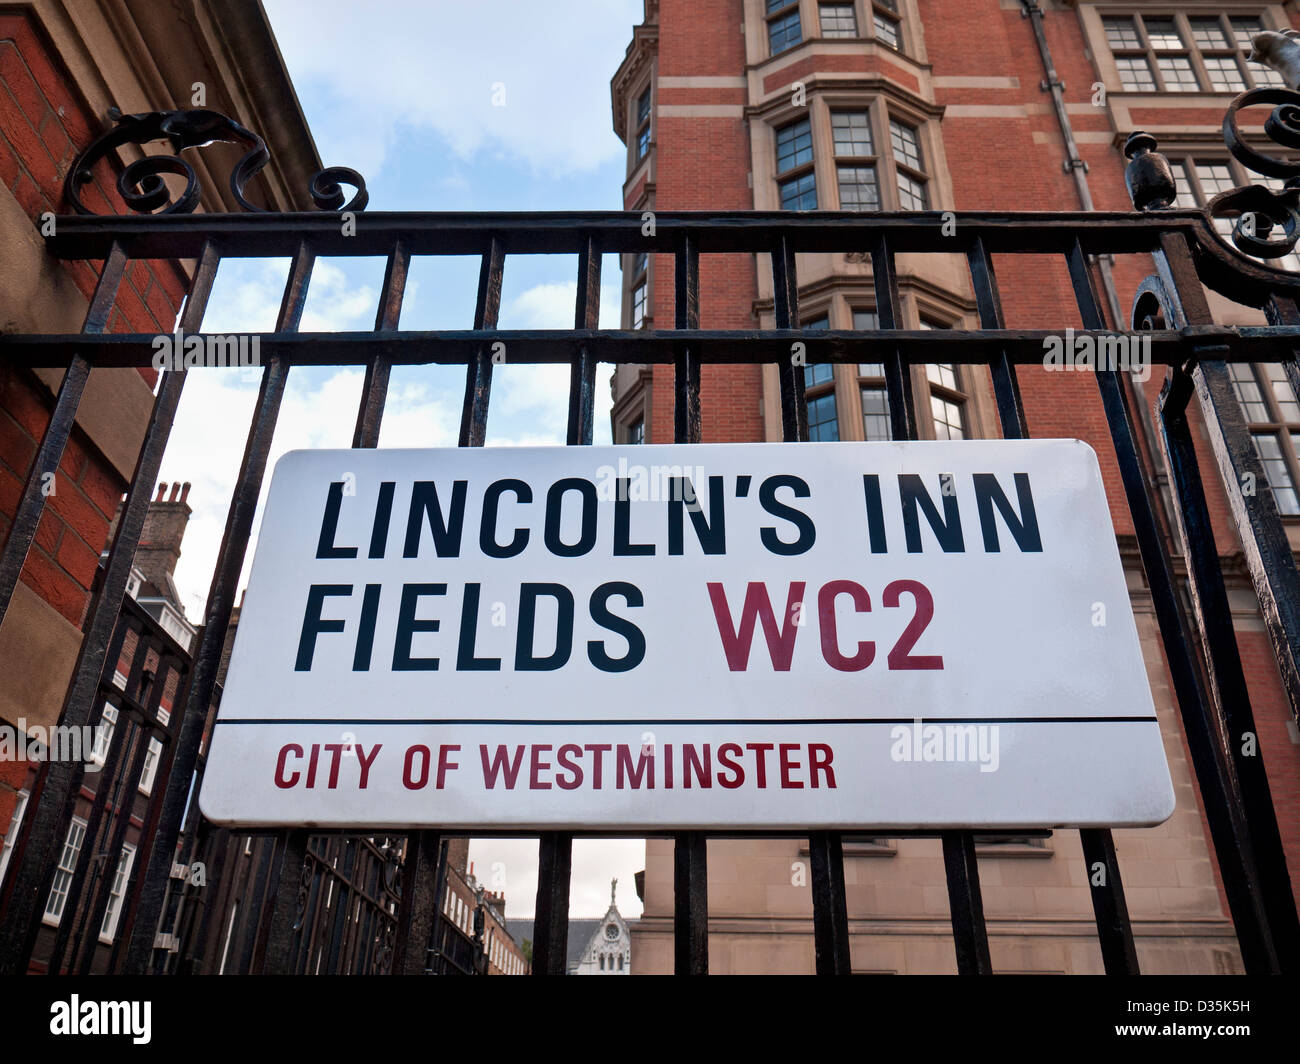 Verkehrszeichen für Lincoln es Inn Fields den größten öffentlichen Platz in der City of Westminster London, UK. Stockfoto